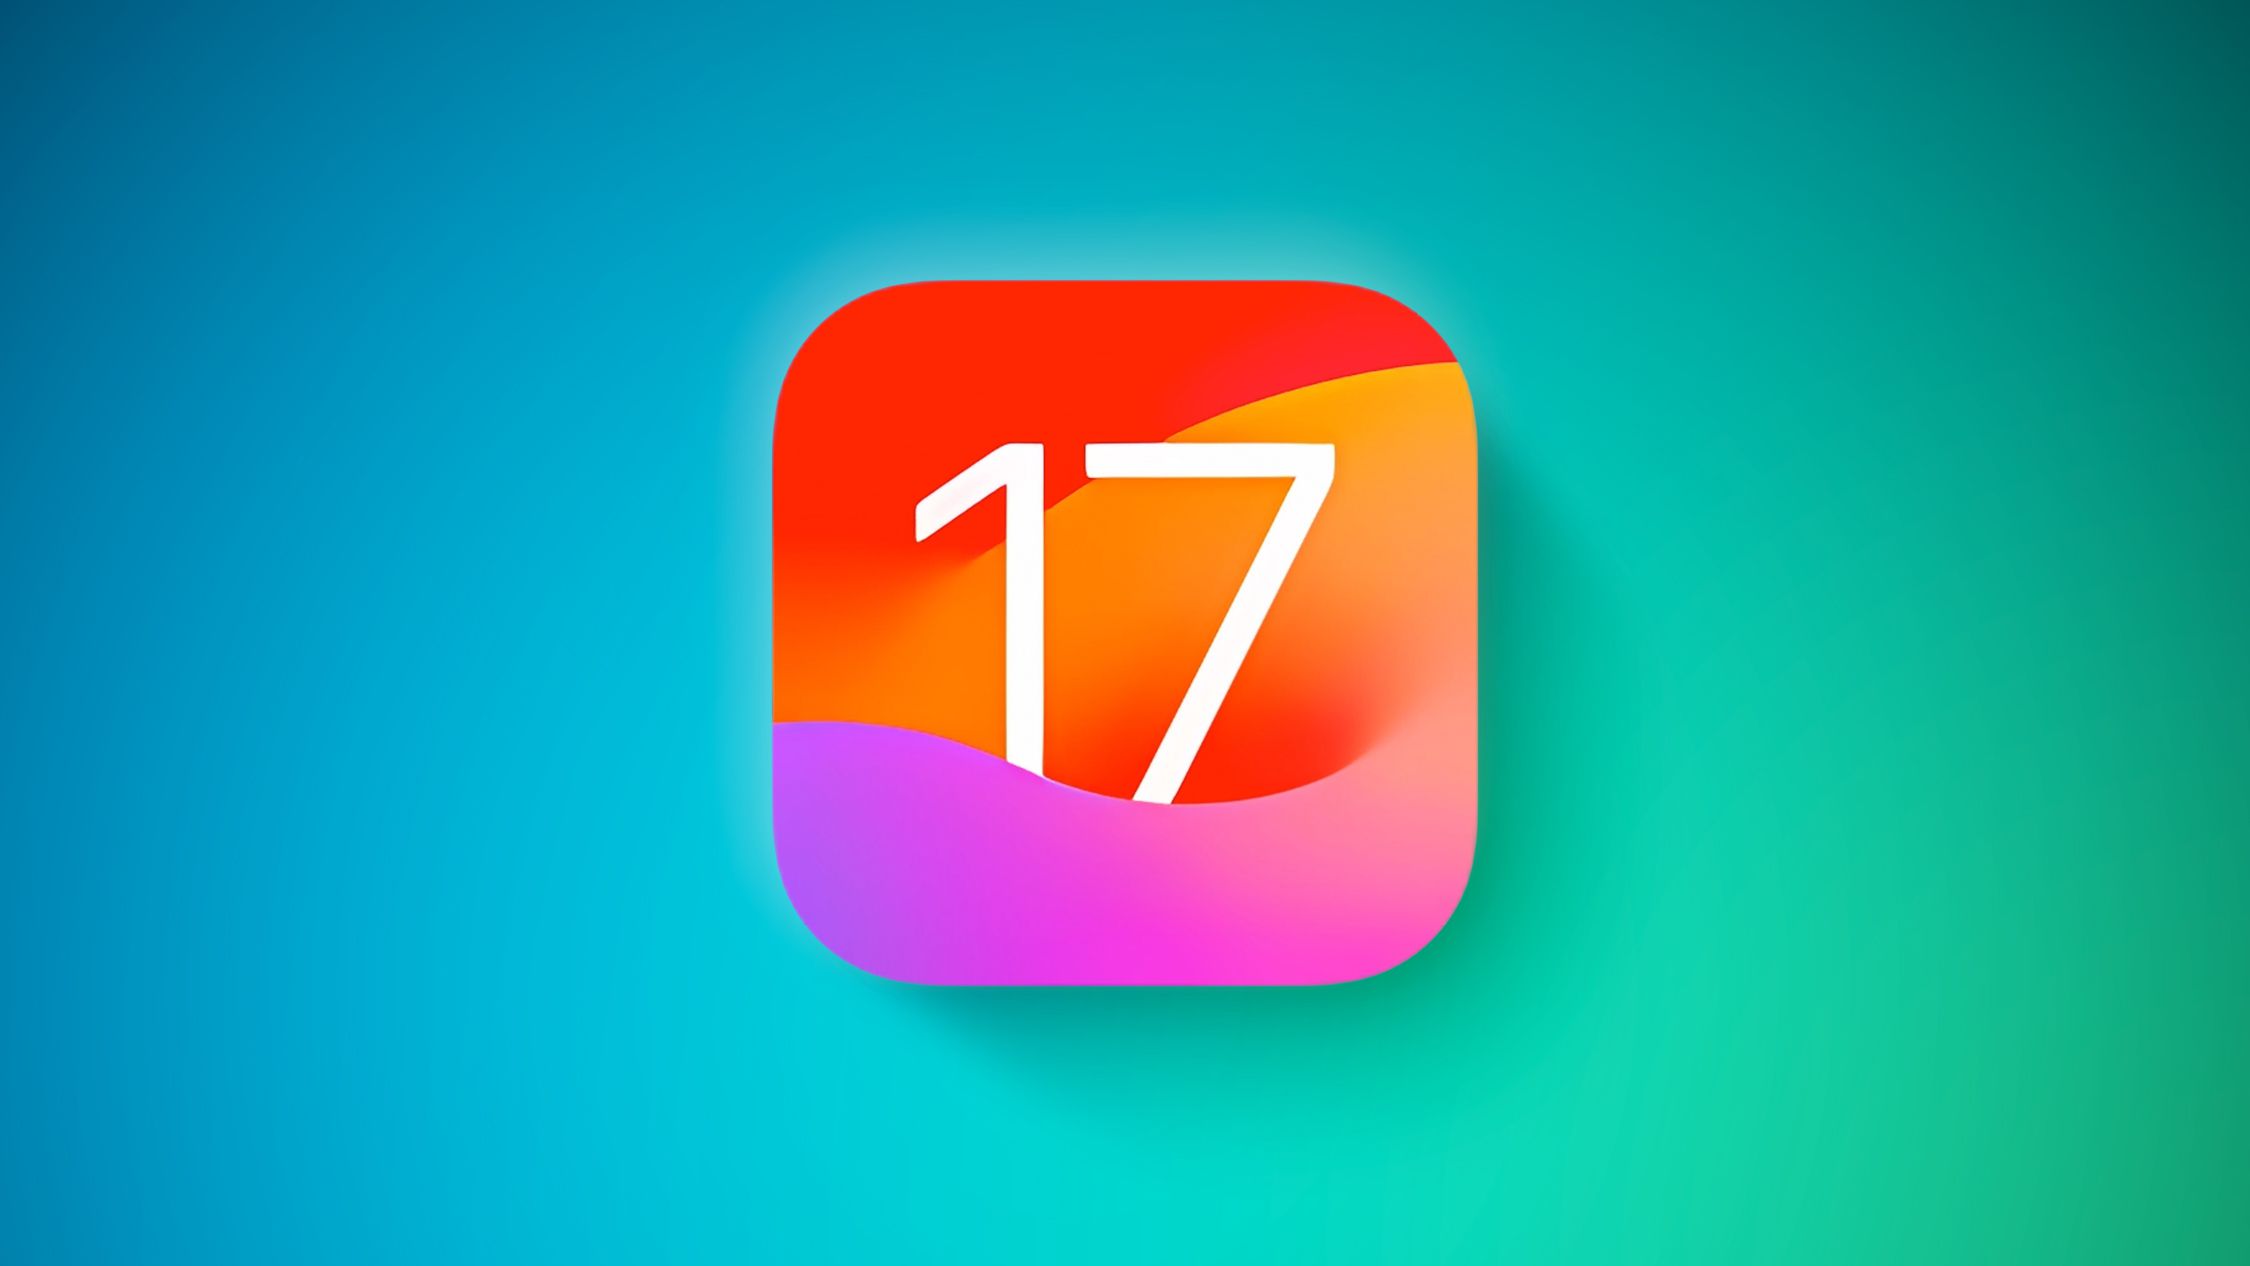 Historias de iOS 17: Sugerencias de Siri mejoradas, temporizadores múltiples, búsqueda visual de recetas y más